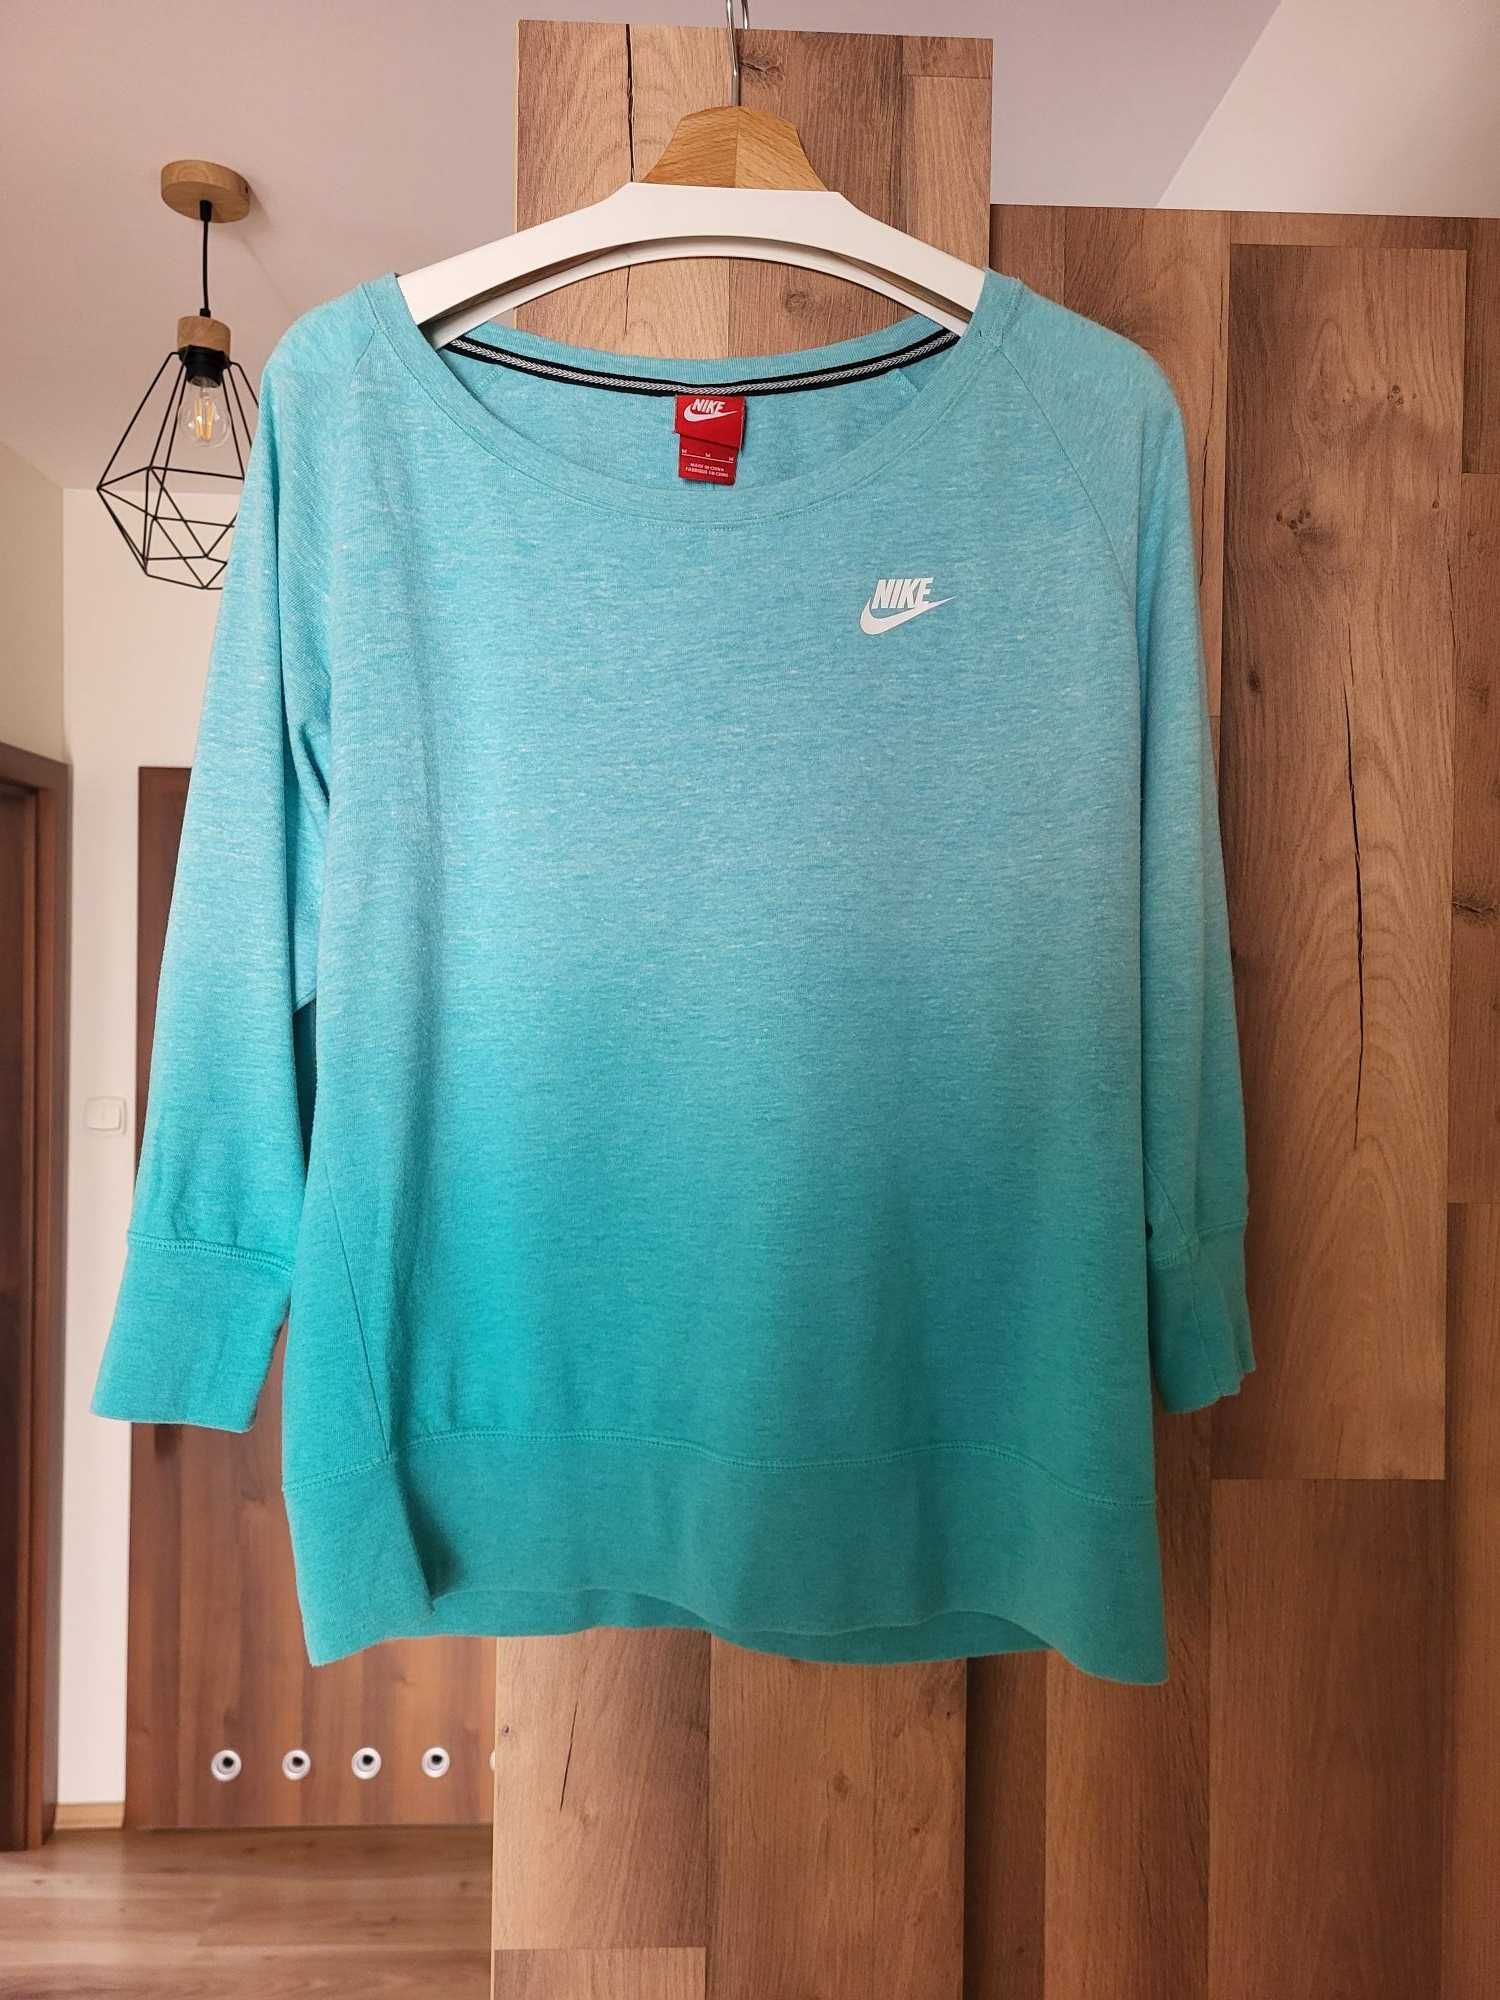 Bluza Nike rozmiar M (turkusowa)